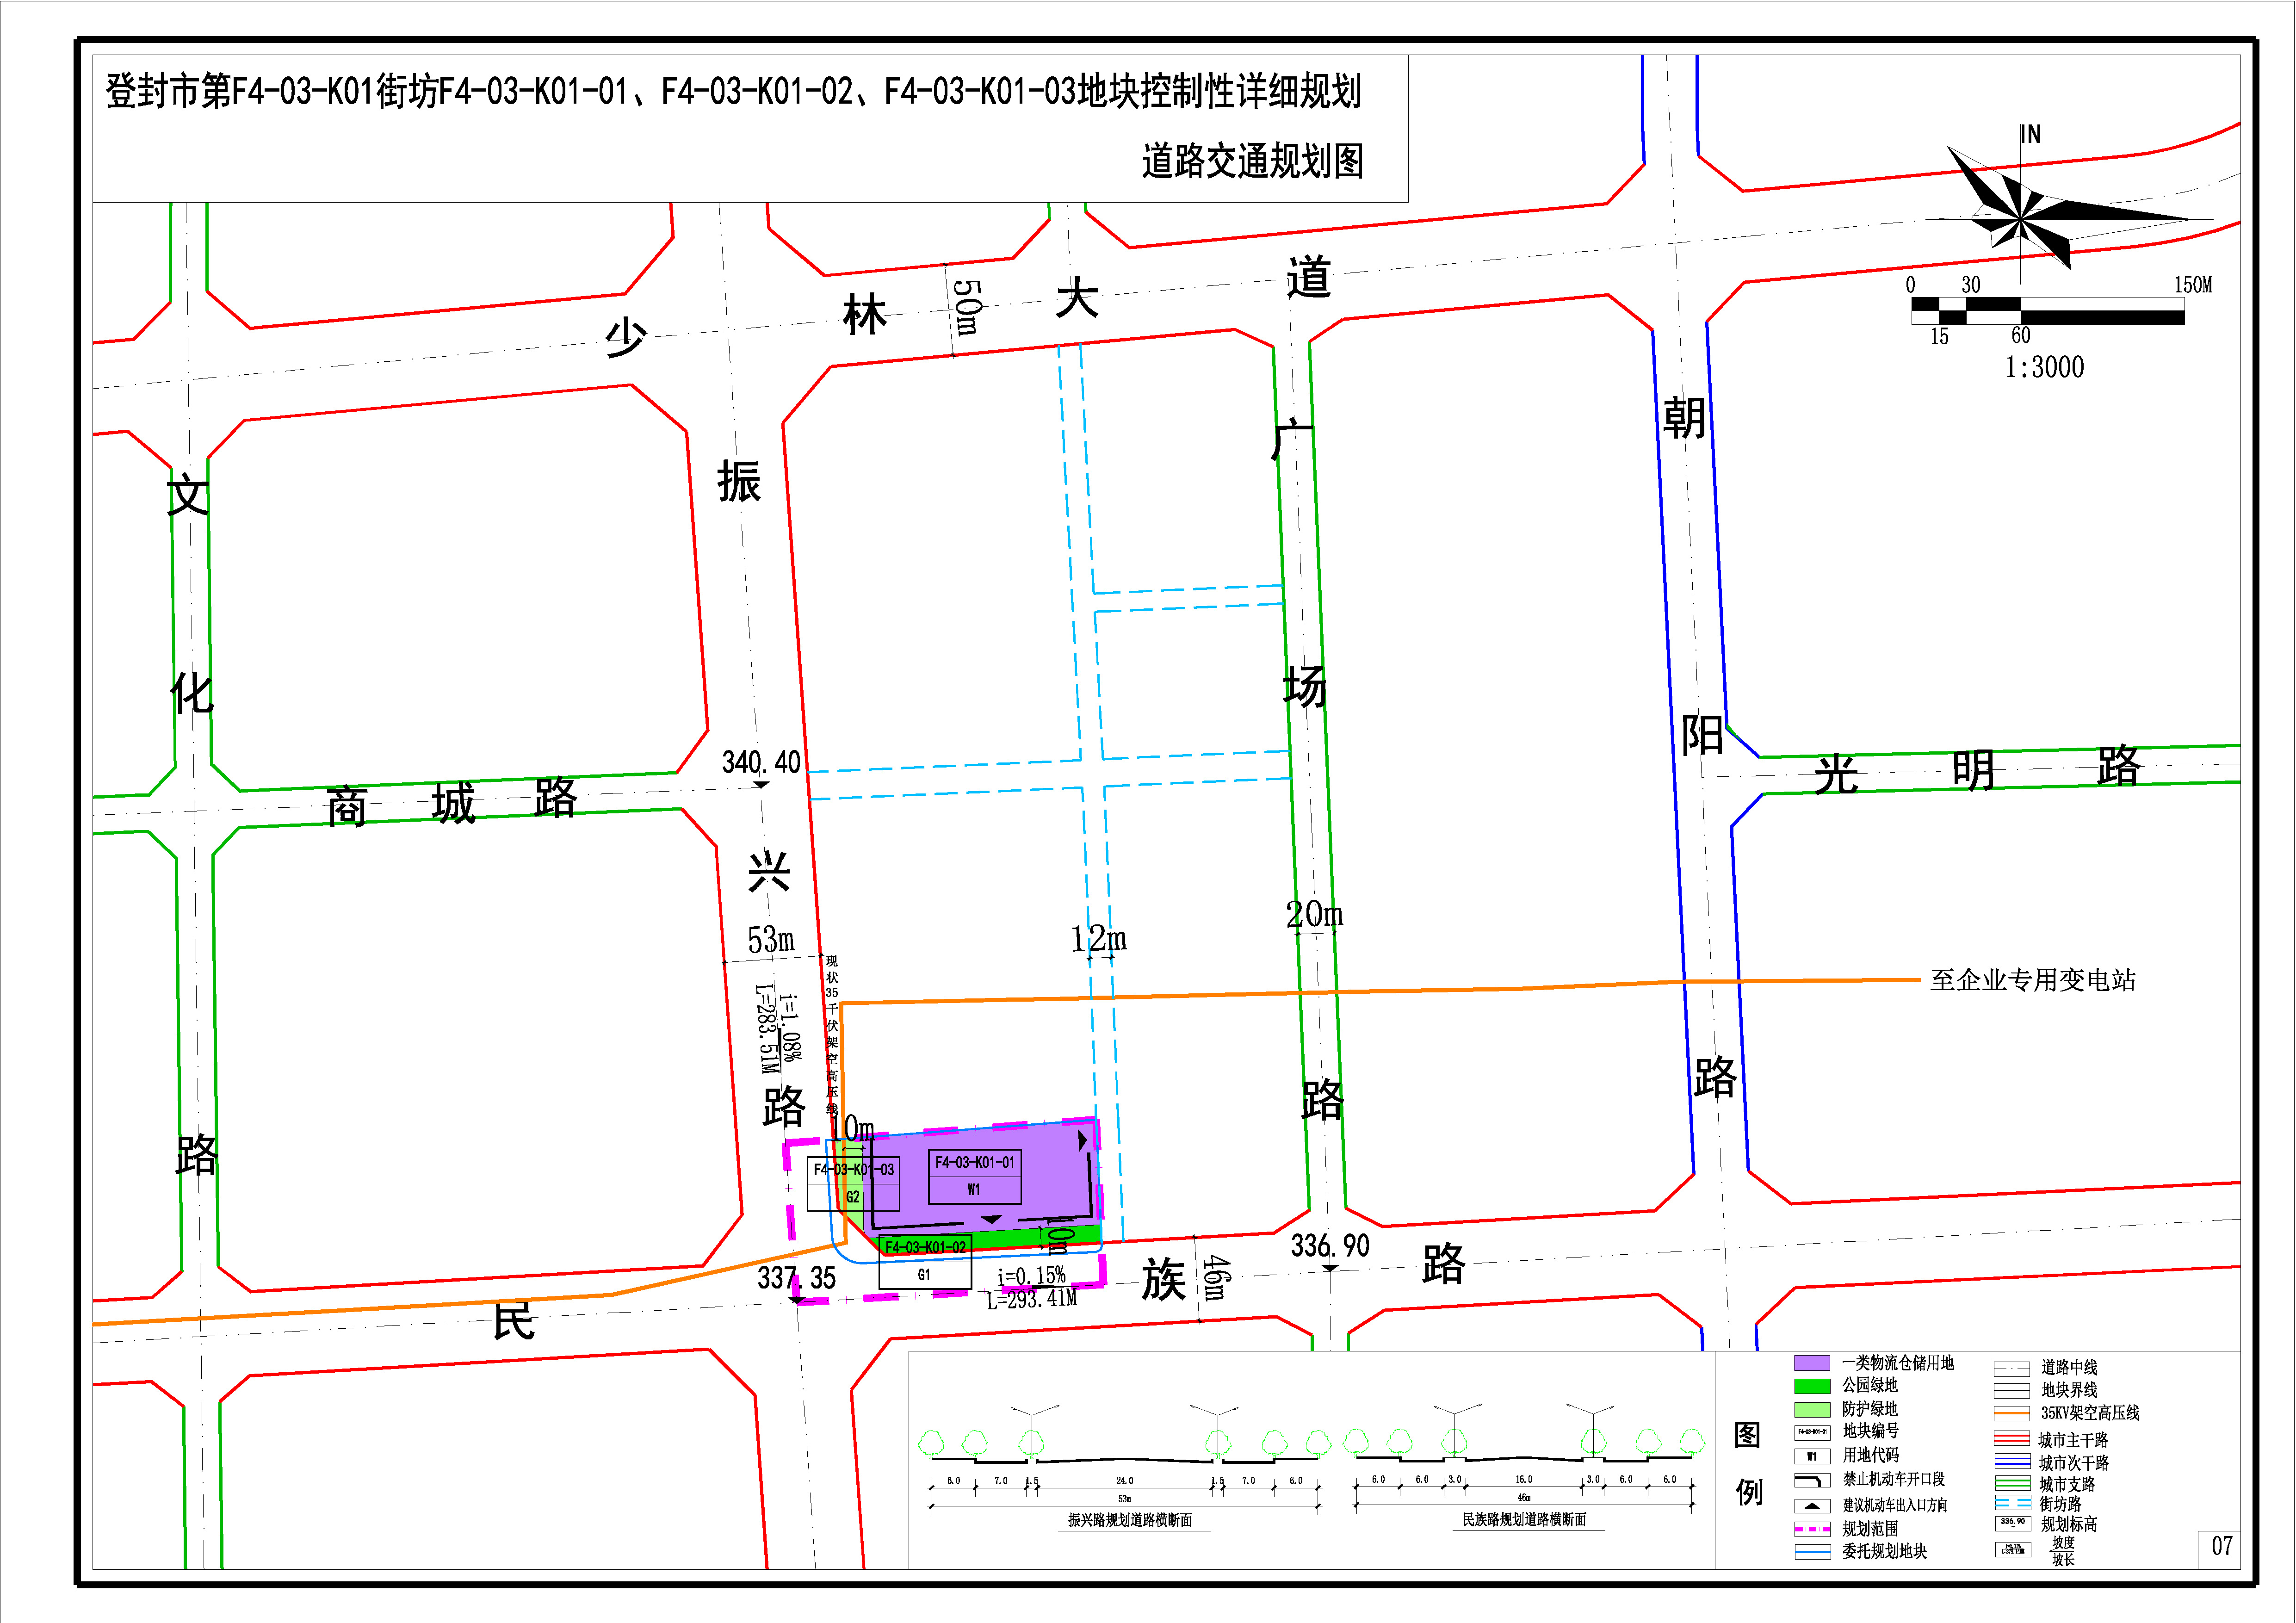 07 道路交通规划图-Model(1).jpg